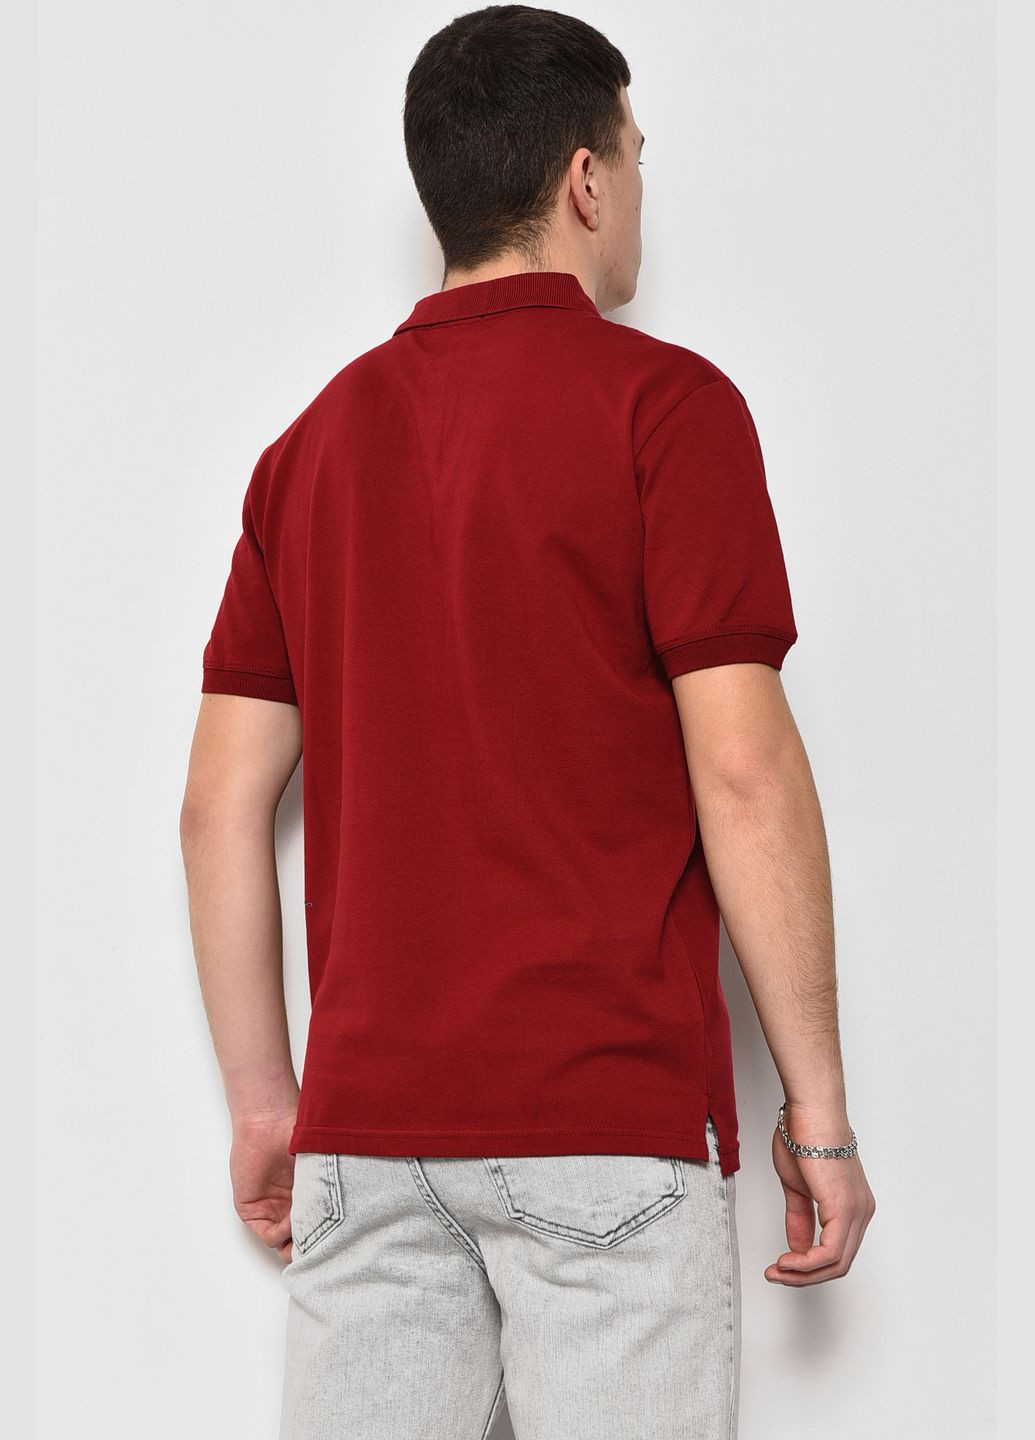 Бордовая футболка поло мужская бордового цвета Let's Shop